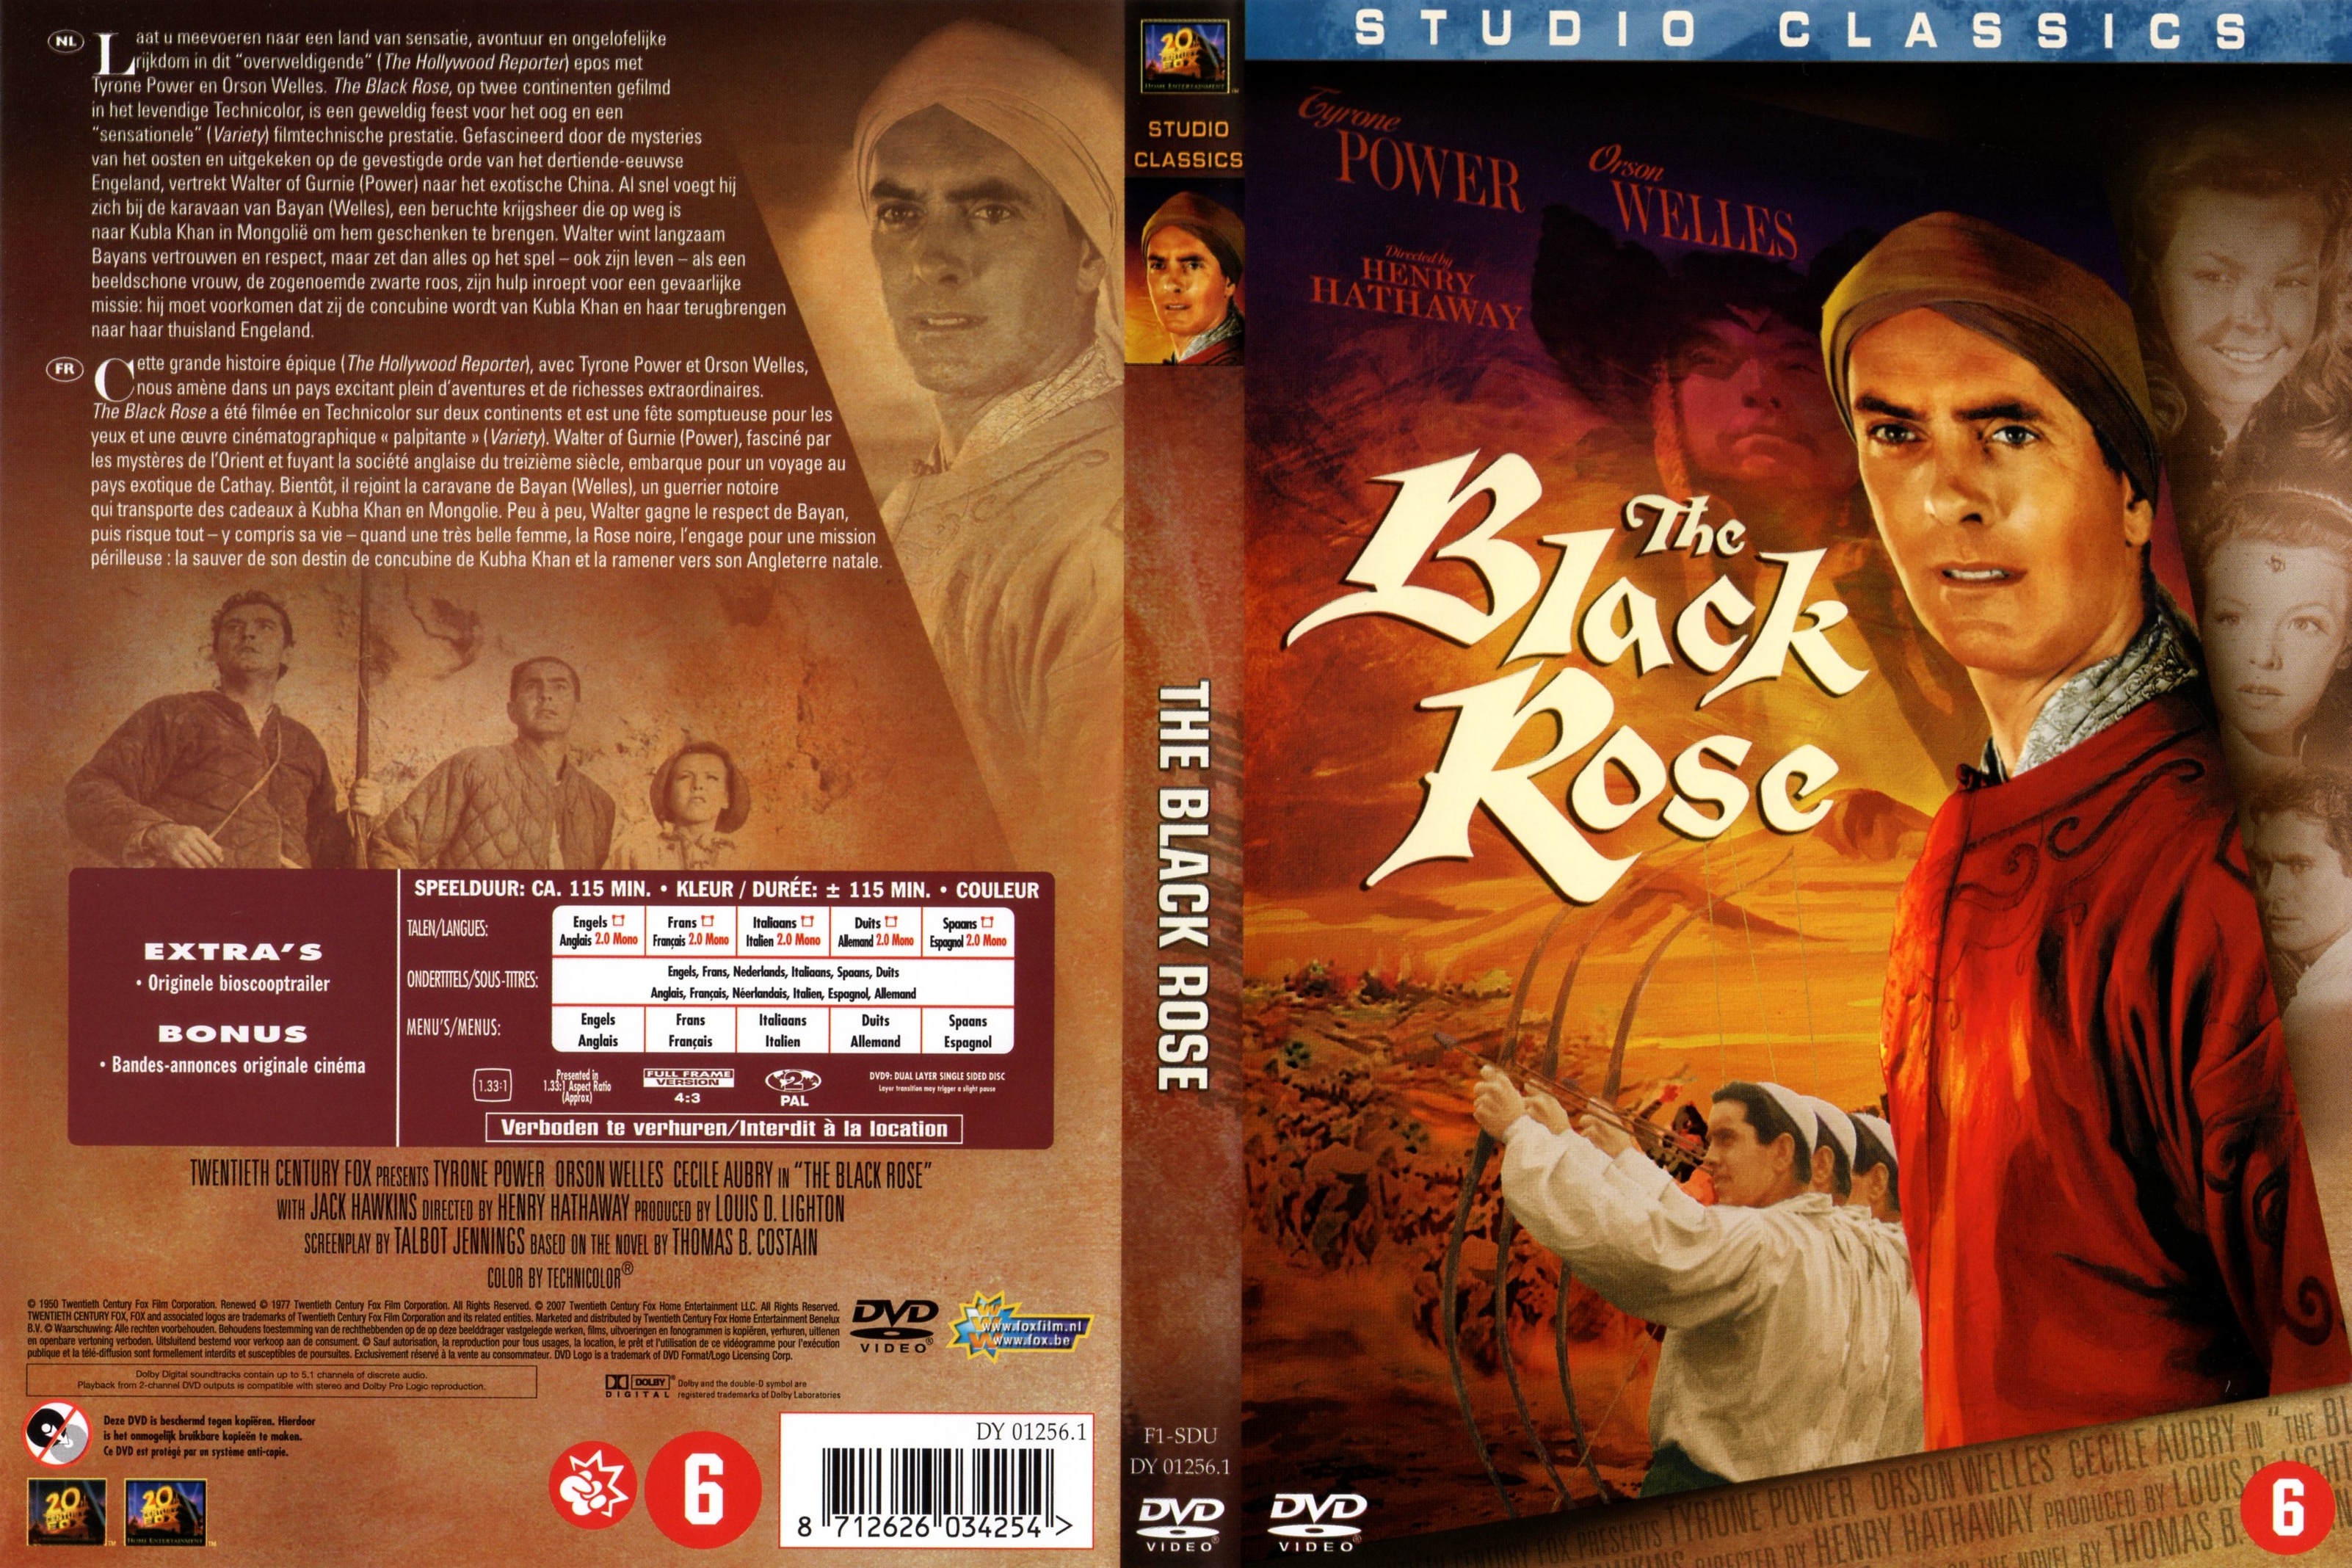 Jaquette DVD La rose noire (1950)